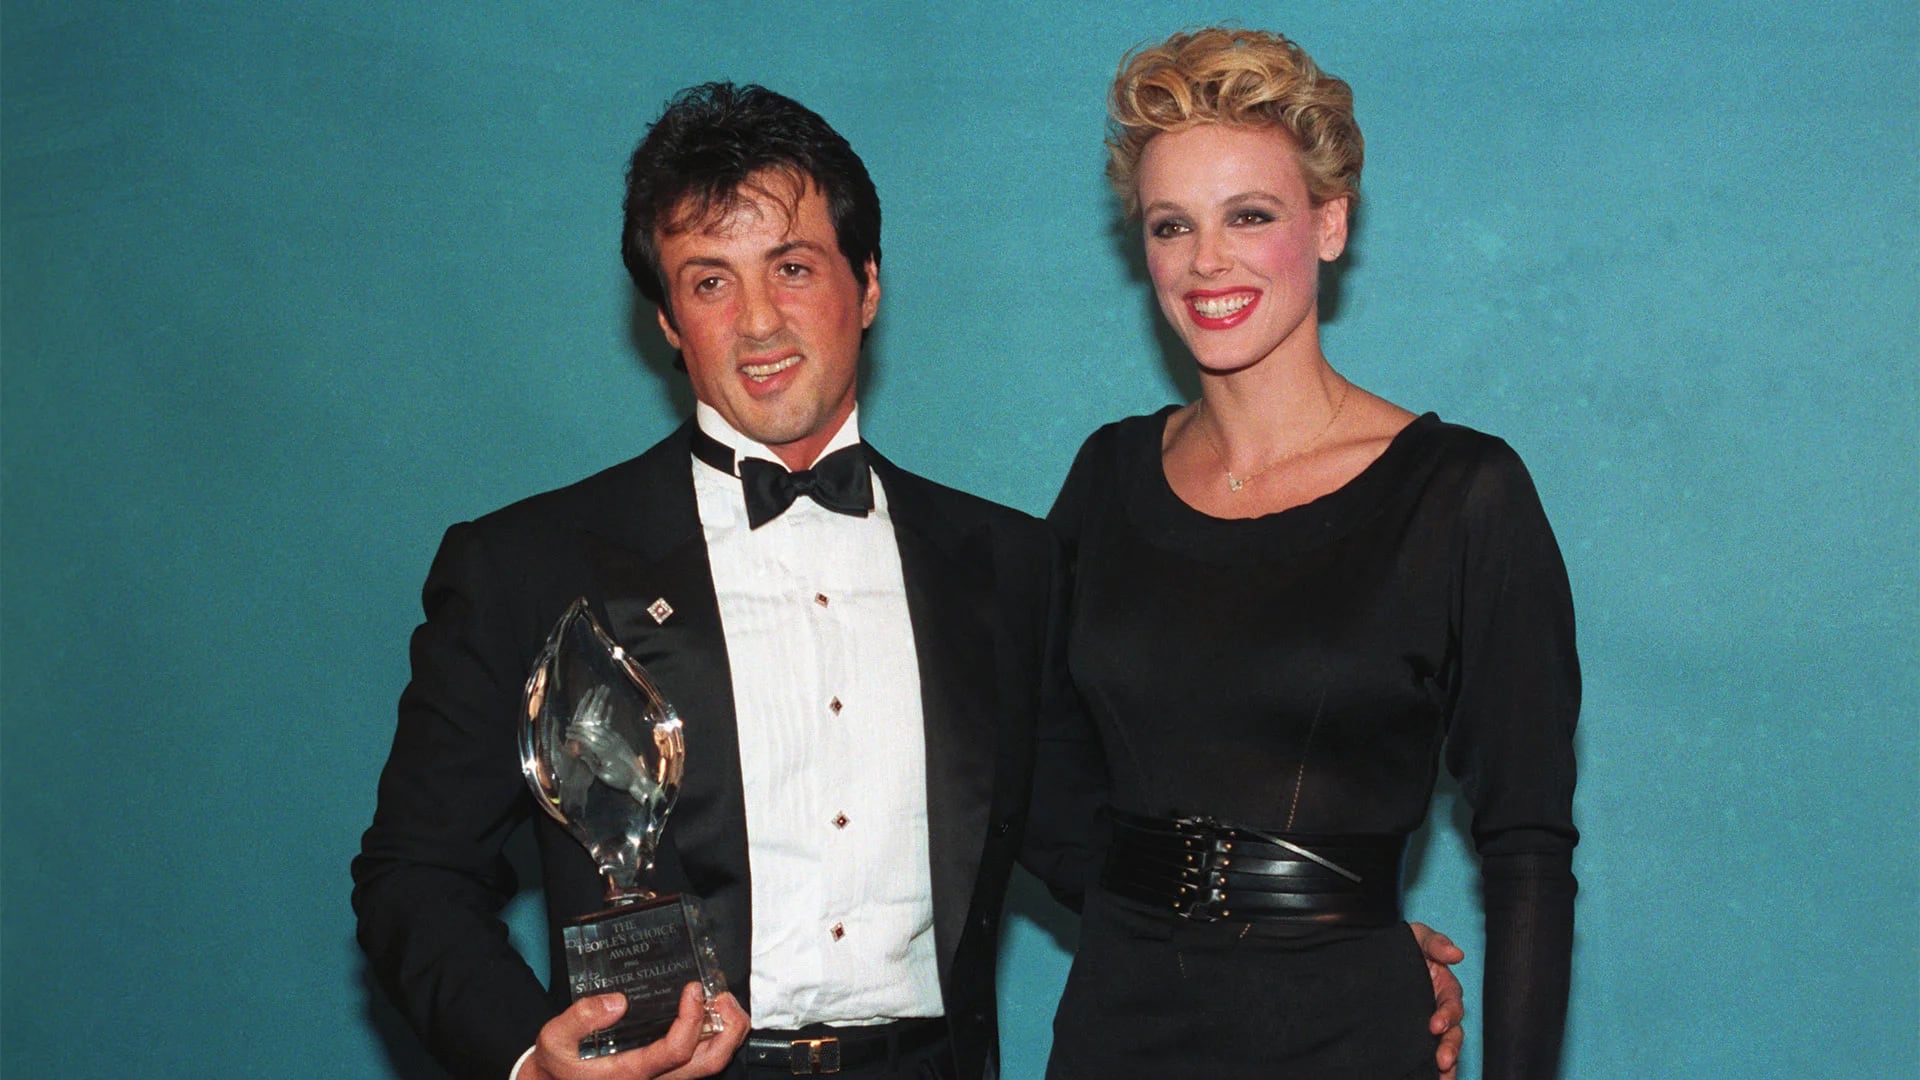 Sylvester Stallone y Brigitte Nielsen estuvieron casados durante 19 meses. La separación fue escandalosa